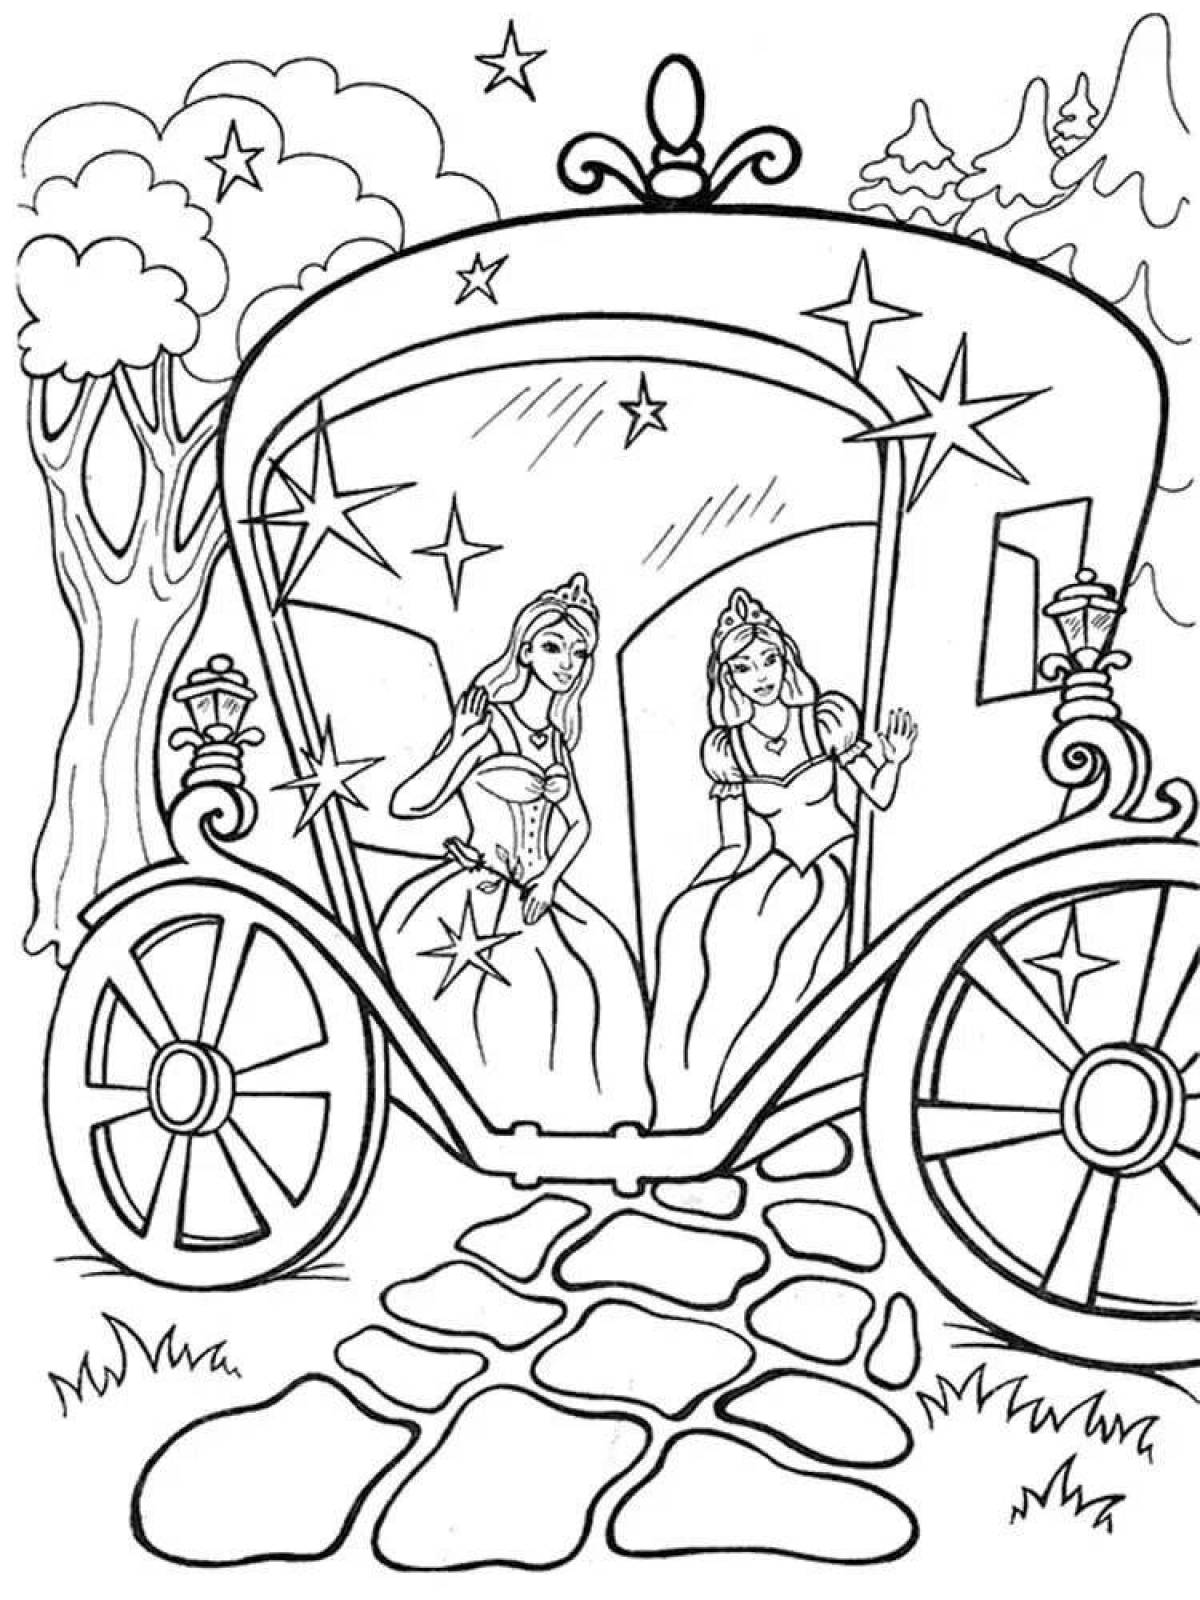 Cinderella's elegant carriage coloring page